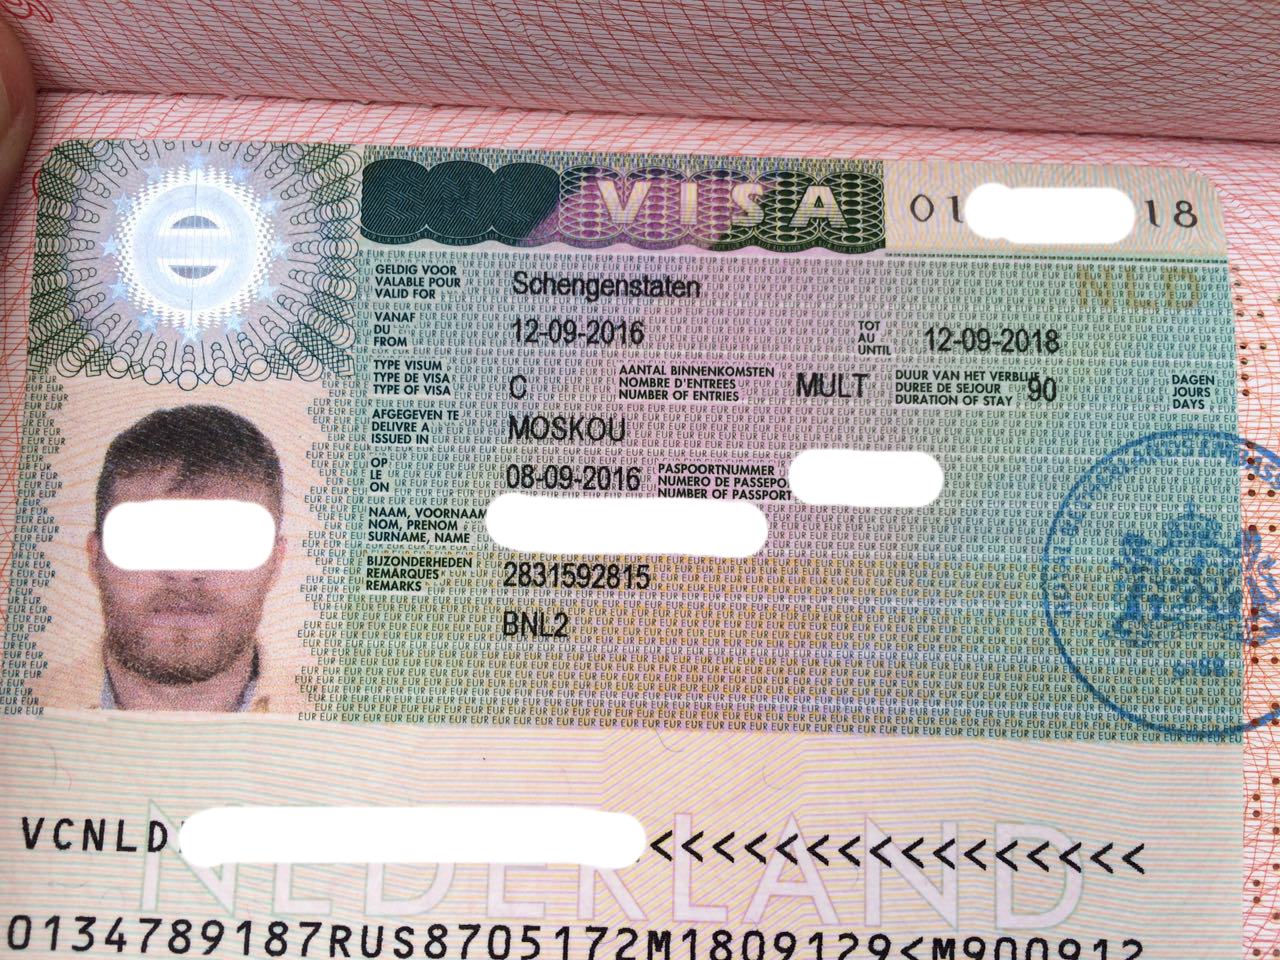 Виза в голландию в санкт-петербурге, получение шенгенской визы в нидерланды, туристическая многократная виза без личной подачи, стоимость оформления шенгена | единый визовый центр